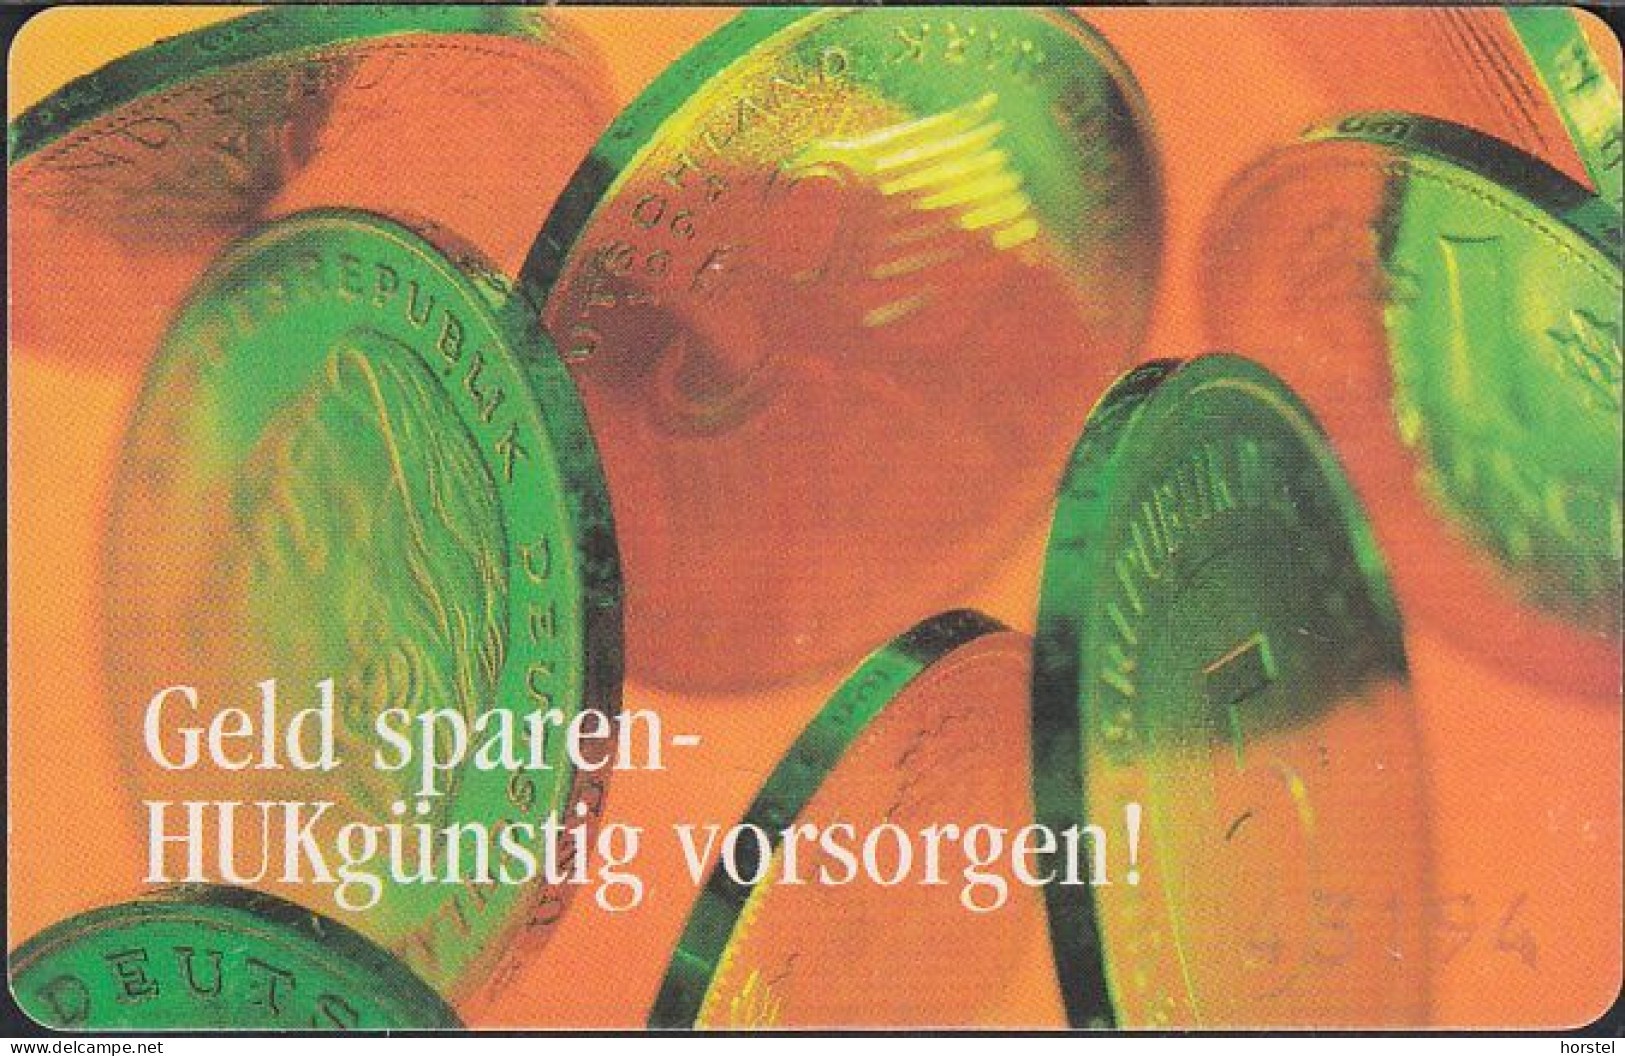 GERMANY S04/97 - HUK - 1,2 Und 5 DM Münzen - Coins - S-Series : Tills With Third Part Ads